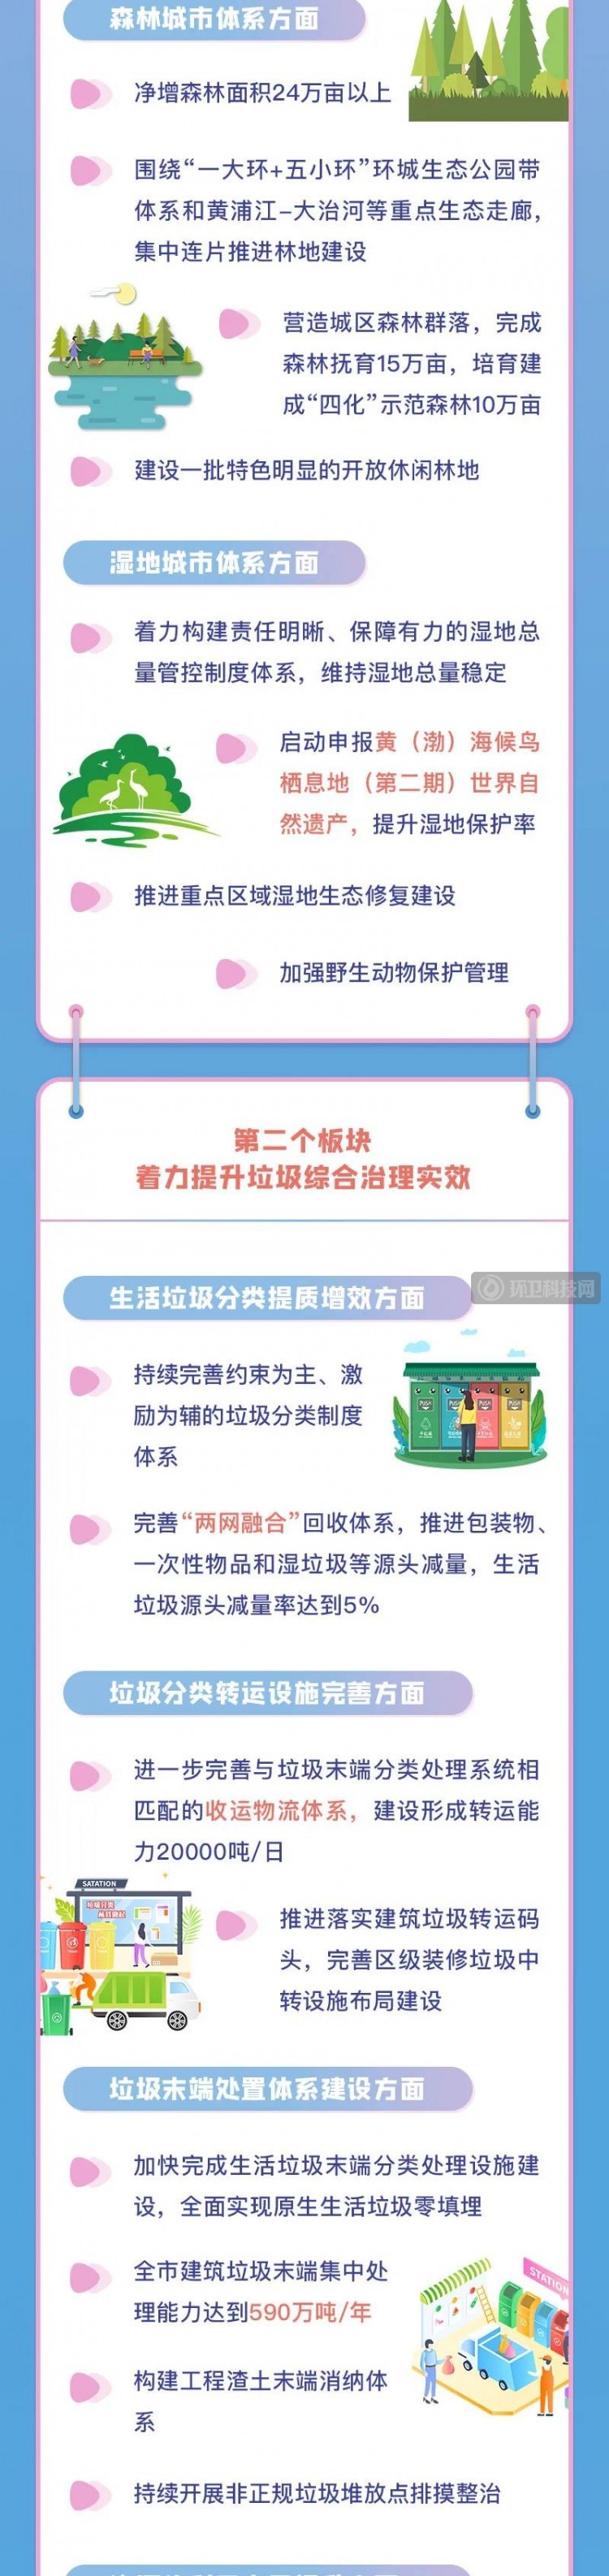 一图带你读懂上海垃圾分类处理和市容环境“十四五”如何发展